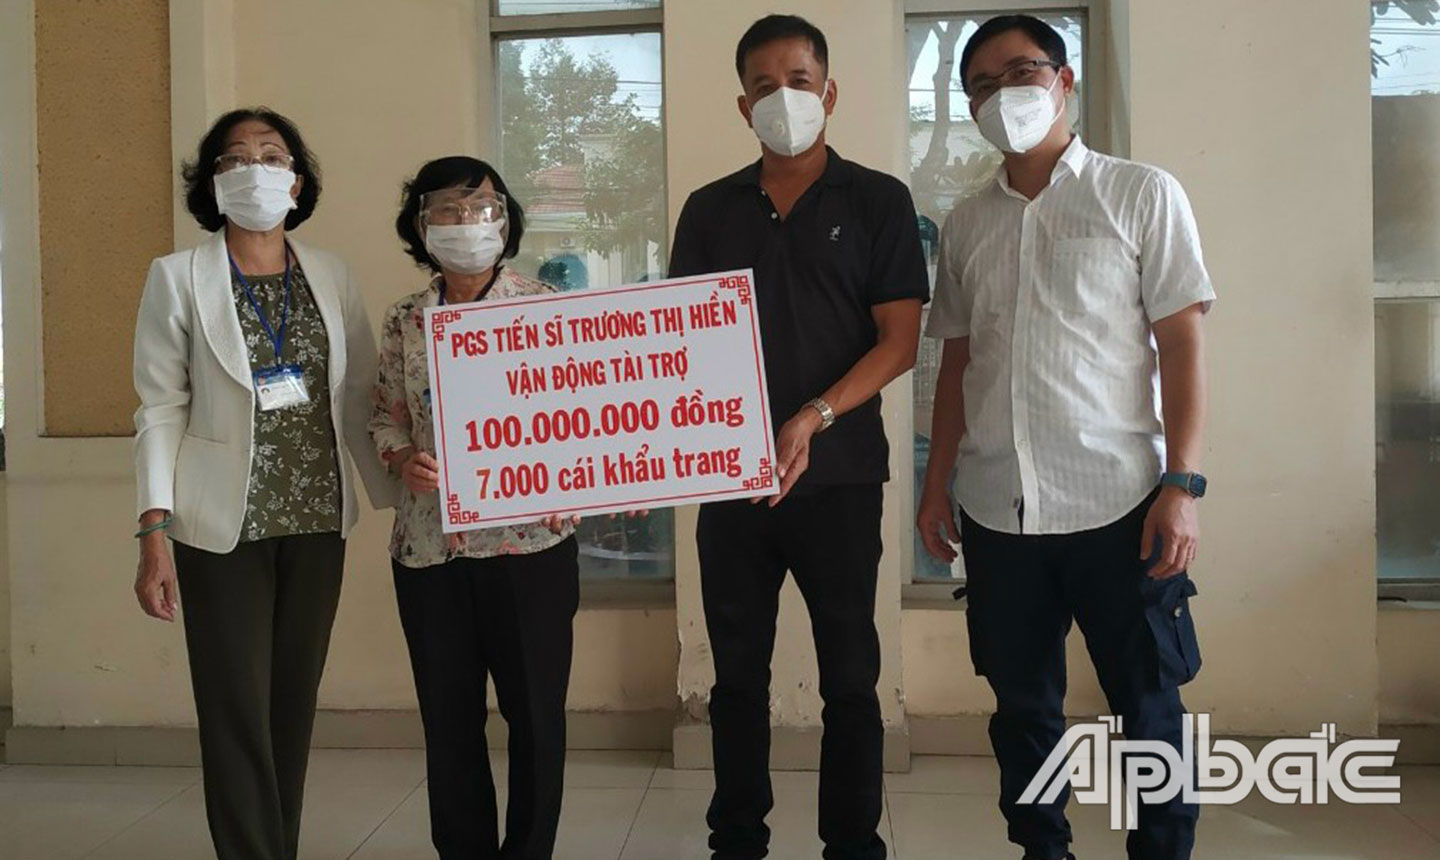 Các tổ chức, cá nhân trực thuộc Ban Liên lạc tại TP. Hồ Chí Minh đã hỗ trợ quê nhà Tiền Giang hàng ngàn thiết bị, vật tư cho công tác phòng, chống dịch bệnh Covid-19.